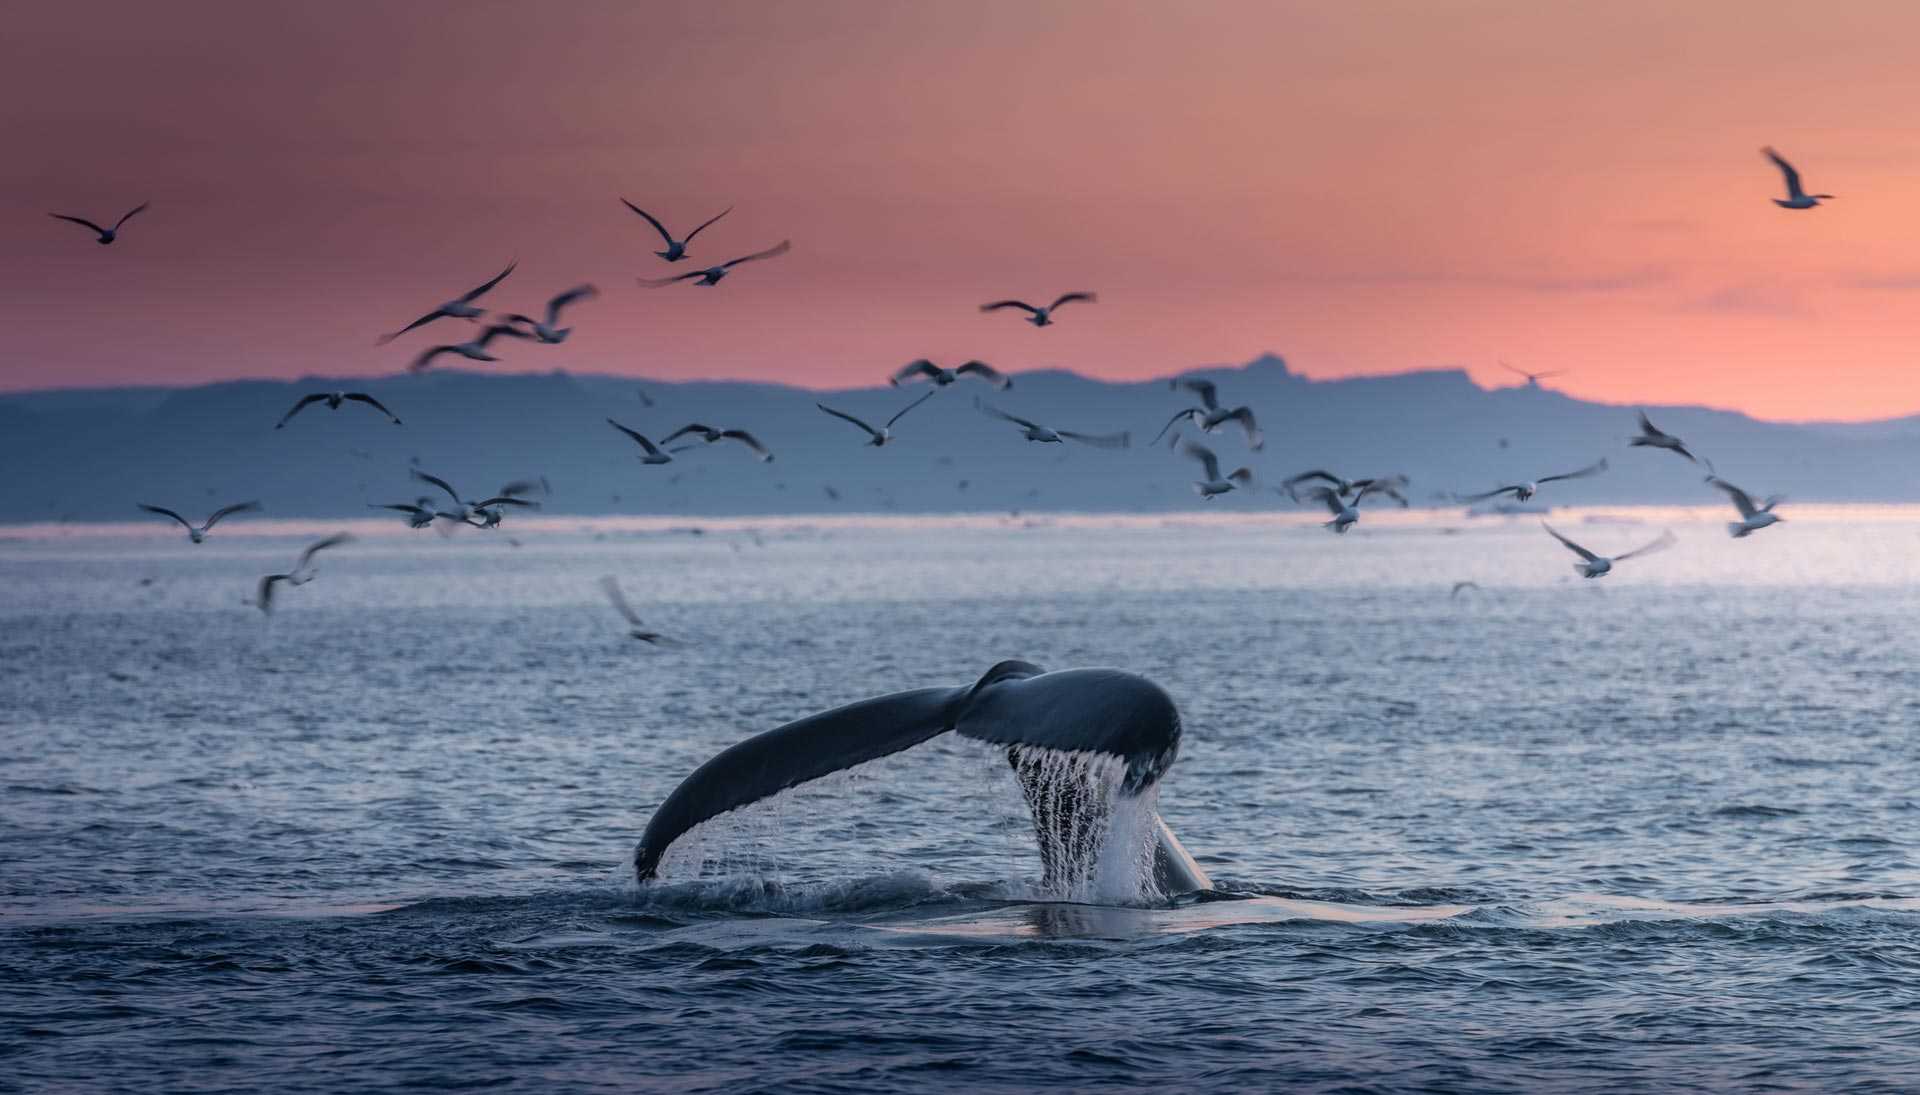 Queue de baleine émergeant au soleil couchant